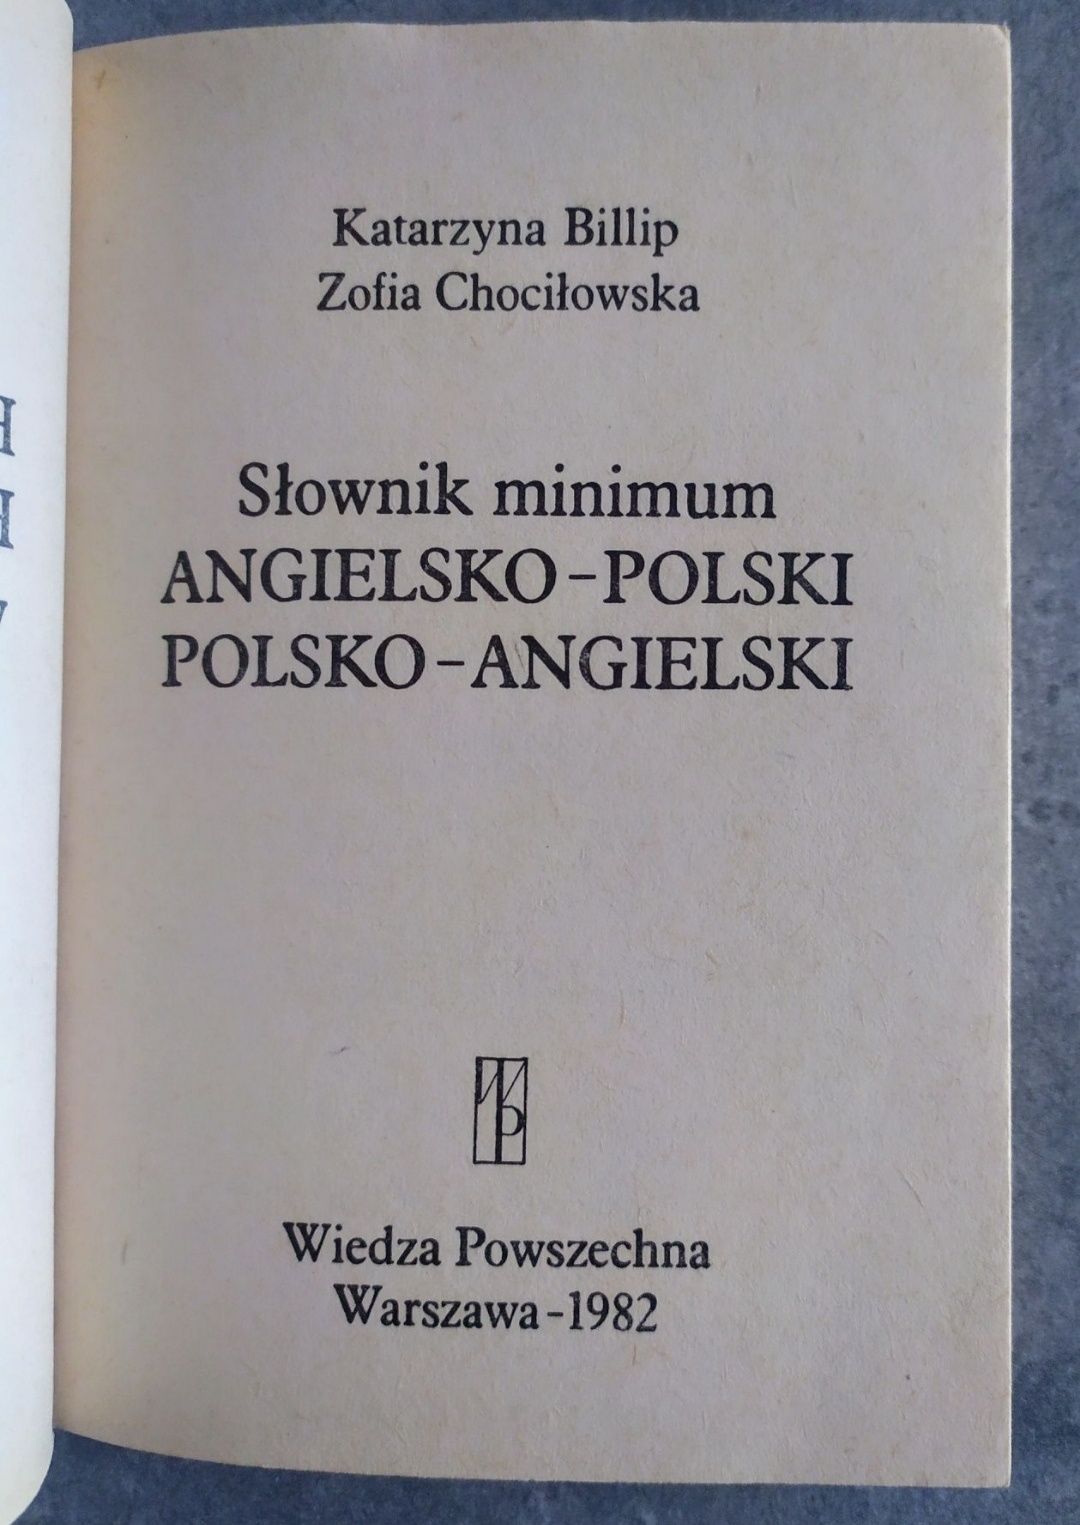 Słownik minimum Angielsko-Polski, Polsko-Angielski - Wiedza Powszechna